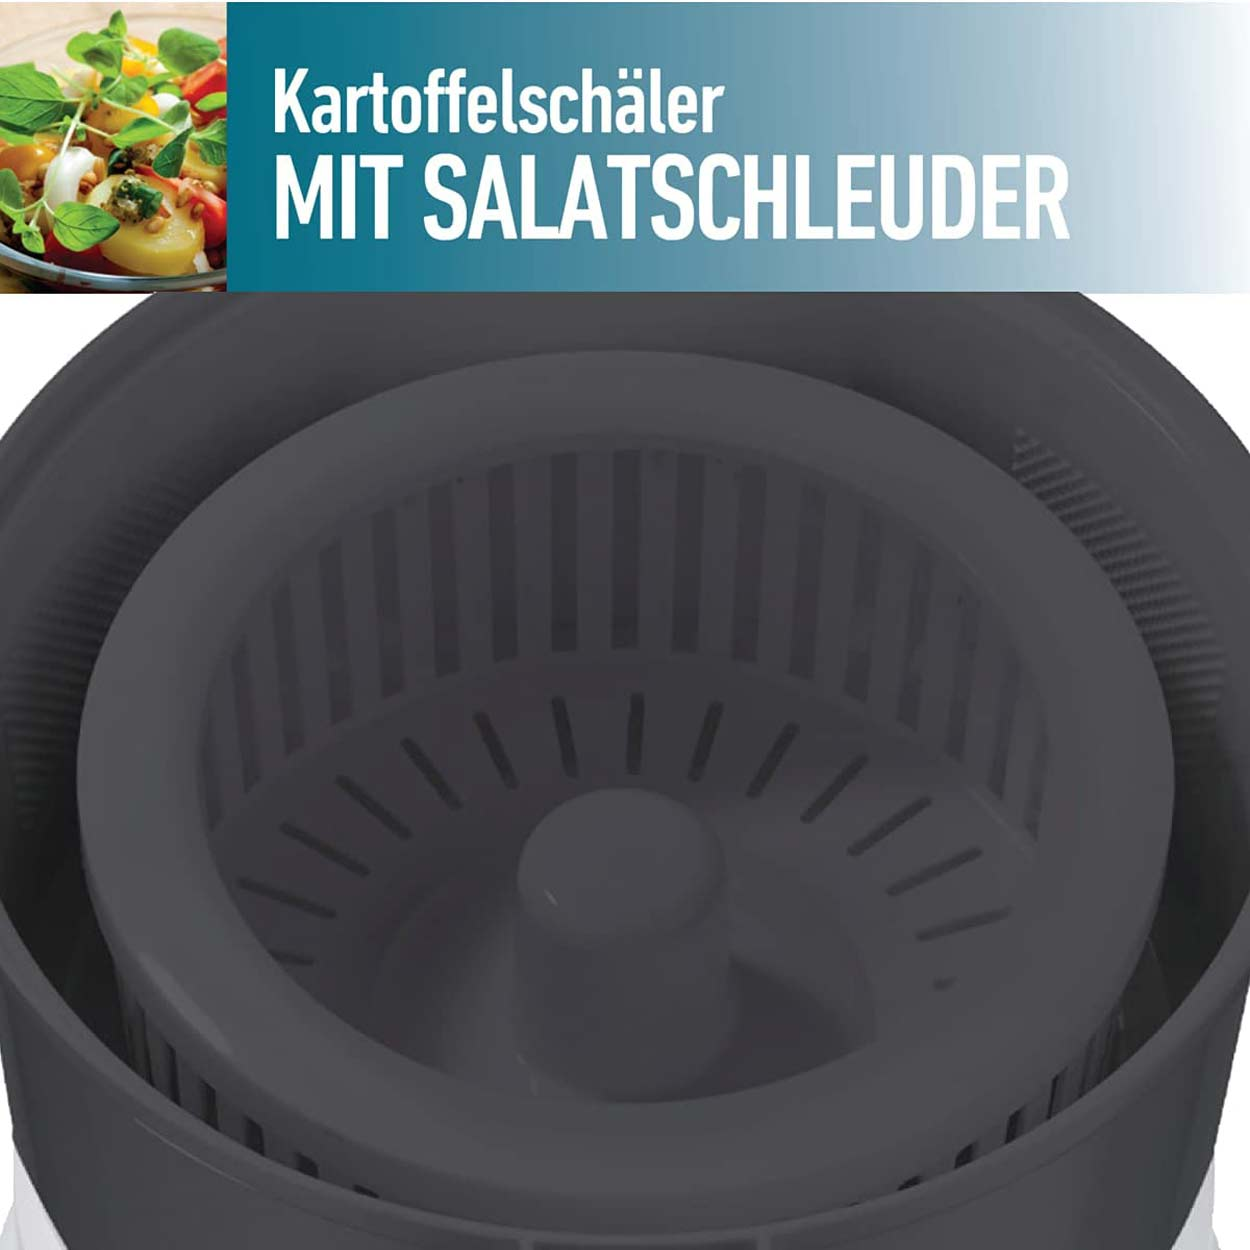 Watt) Kartoffelschälmaschine Schwarz GASTRONOMA 18220001 (85